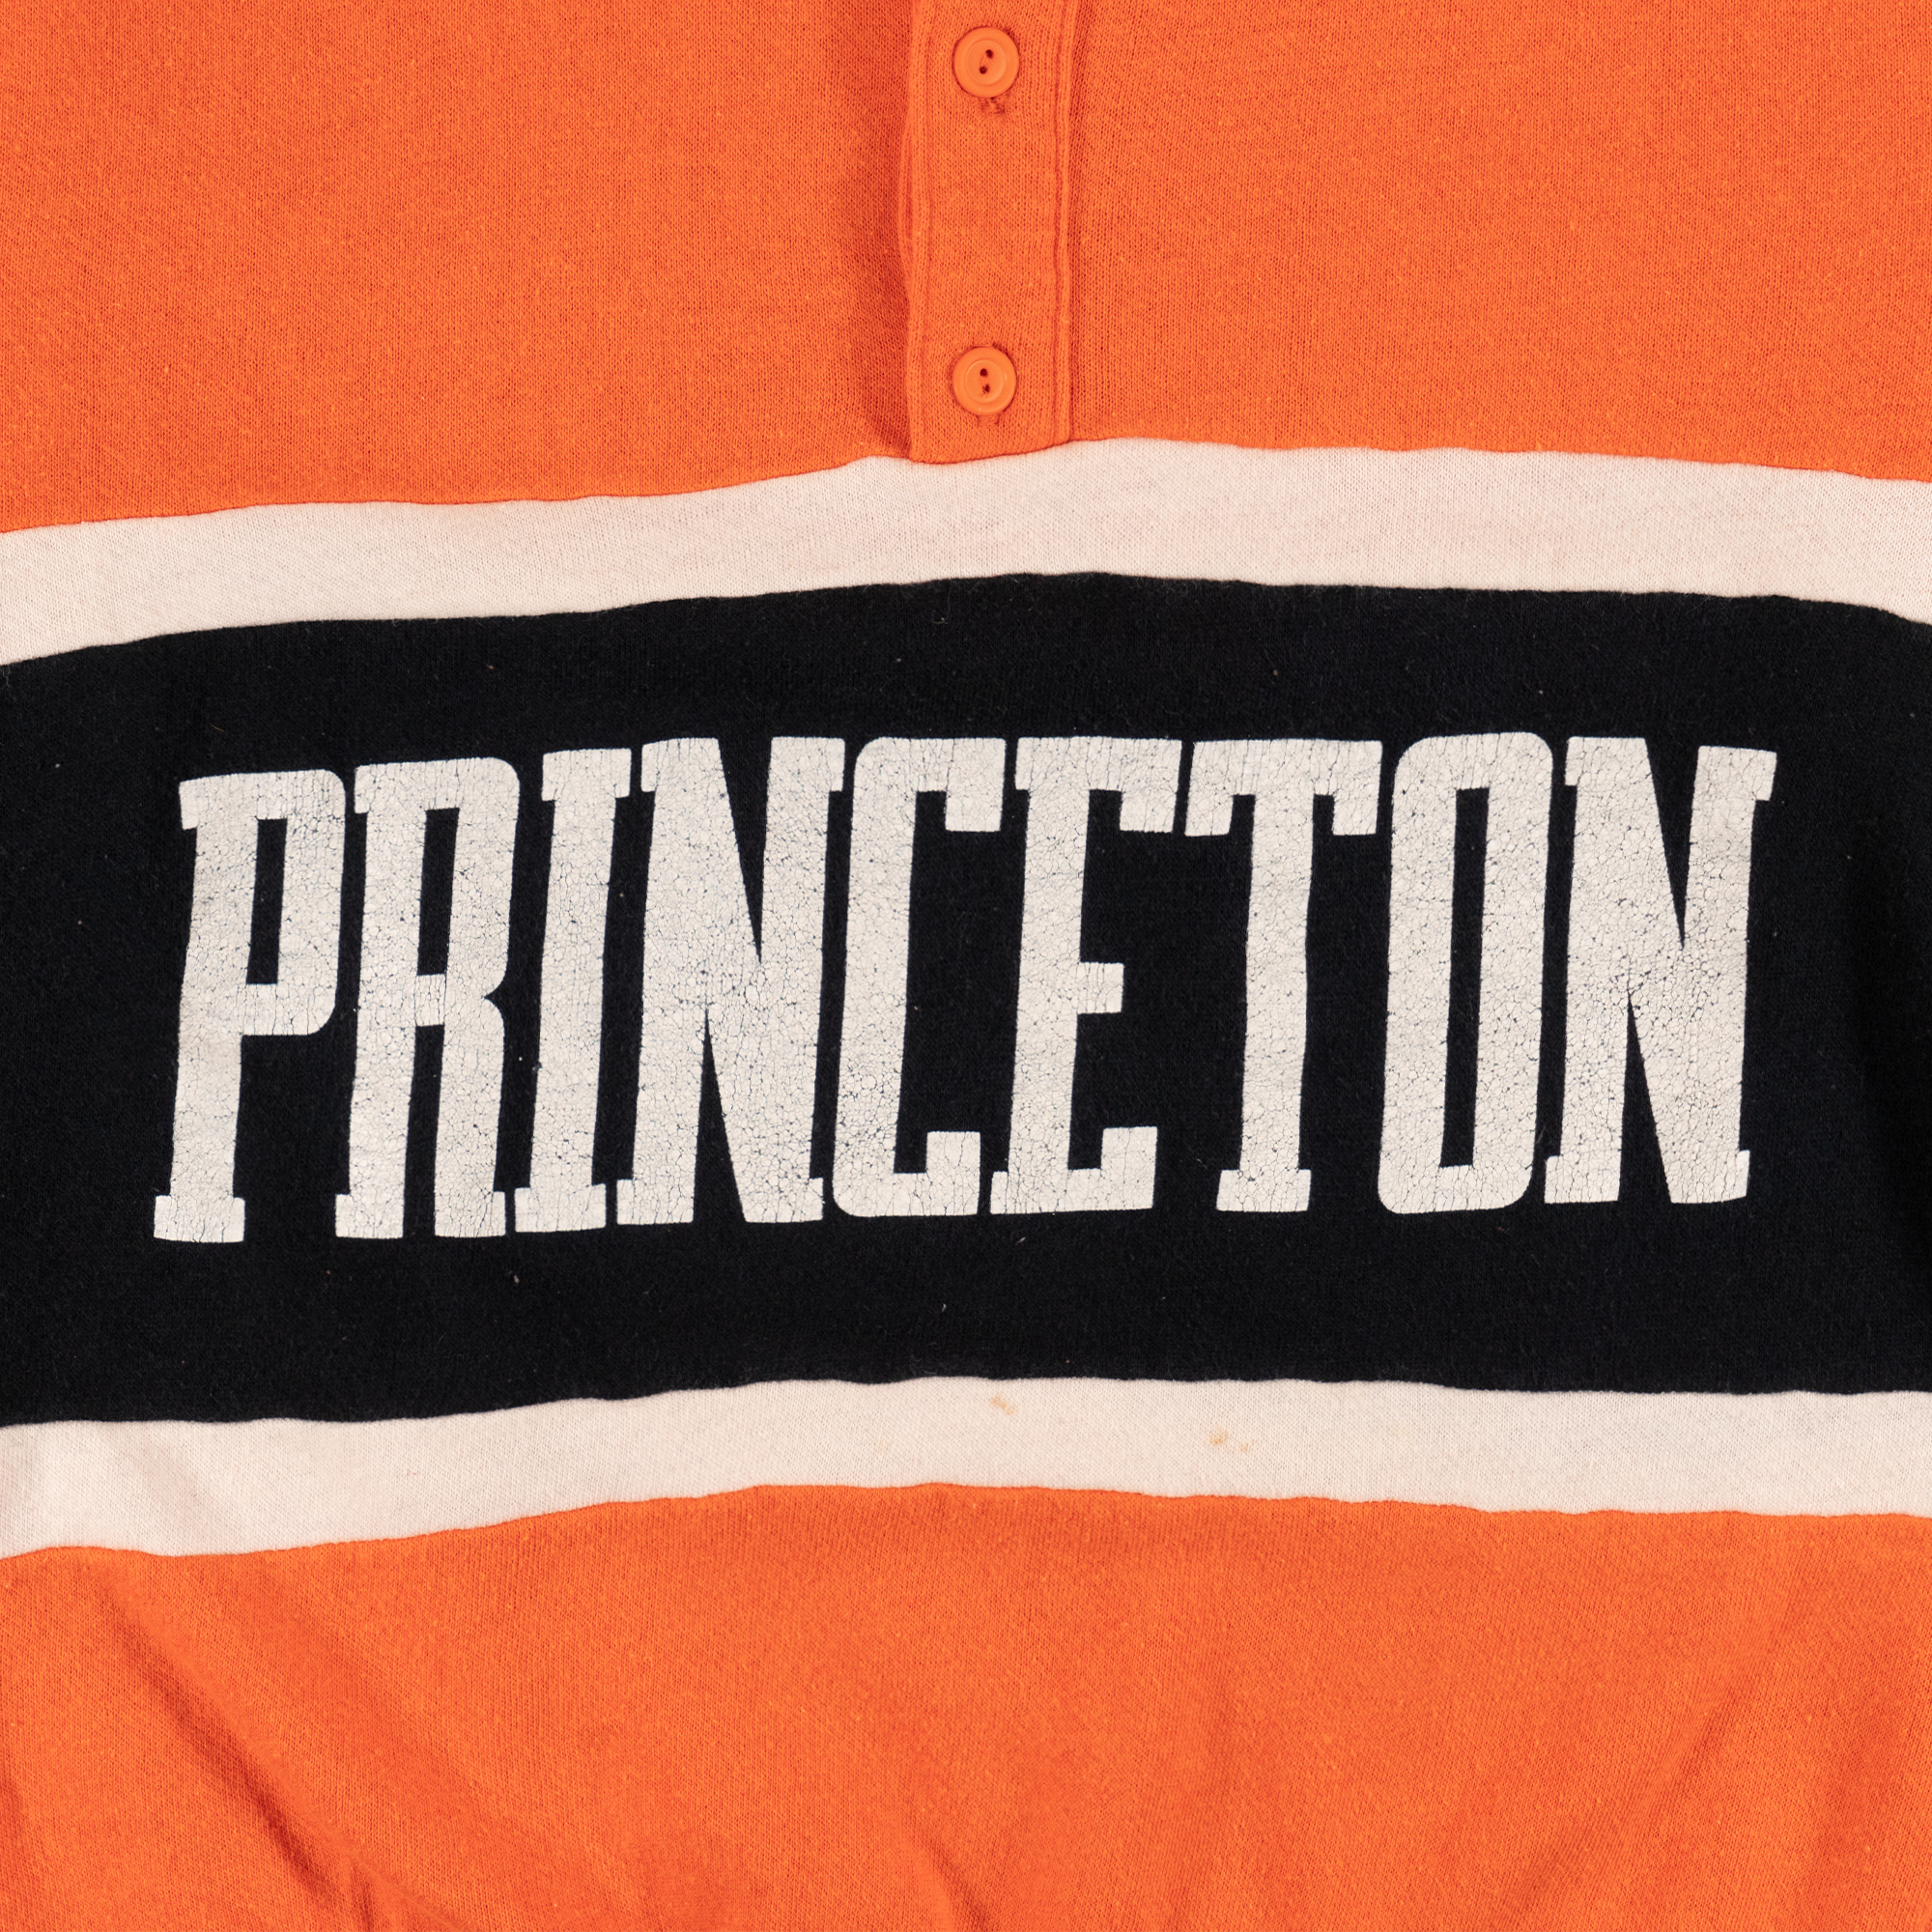 Princeton University Collared Sweatshirt Orange-PLUS